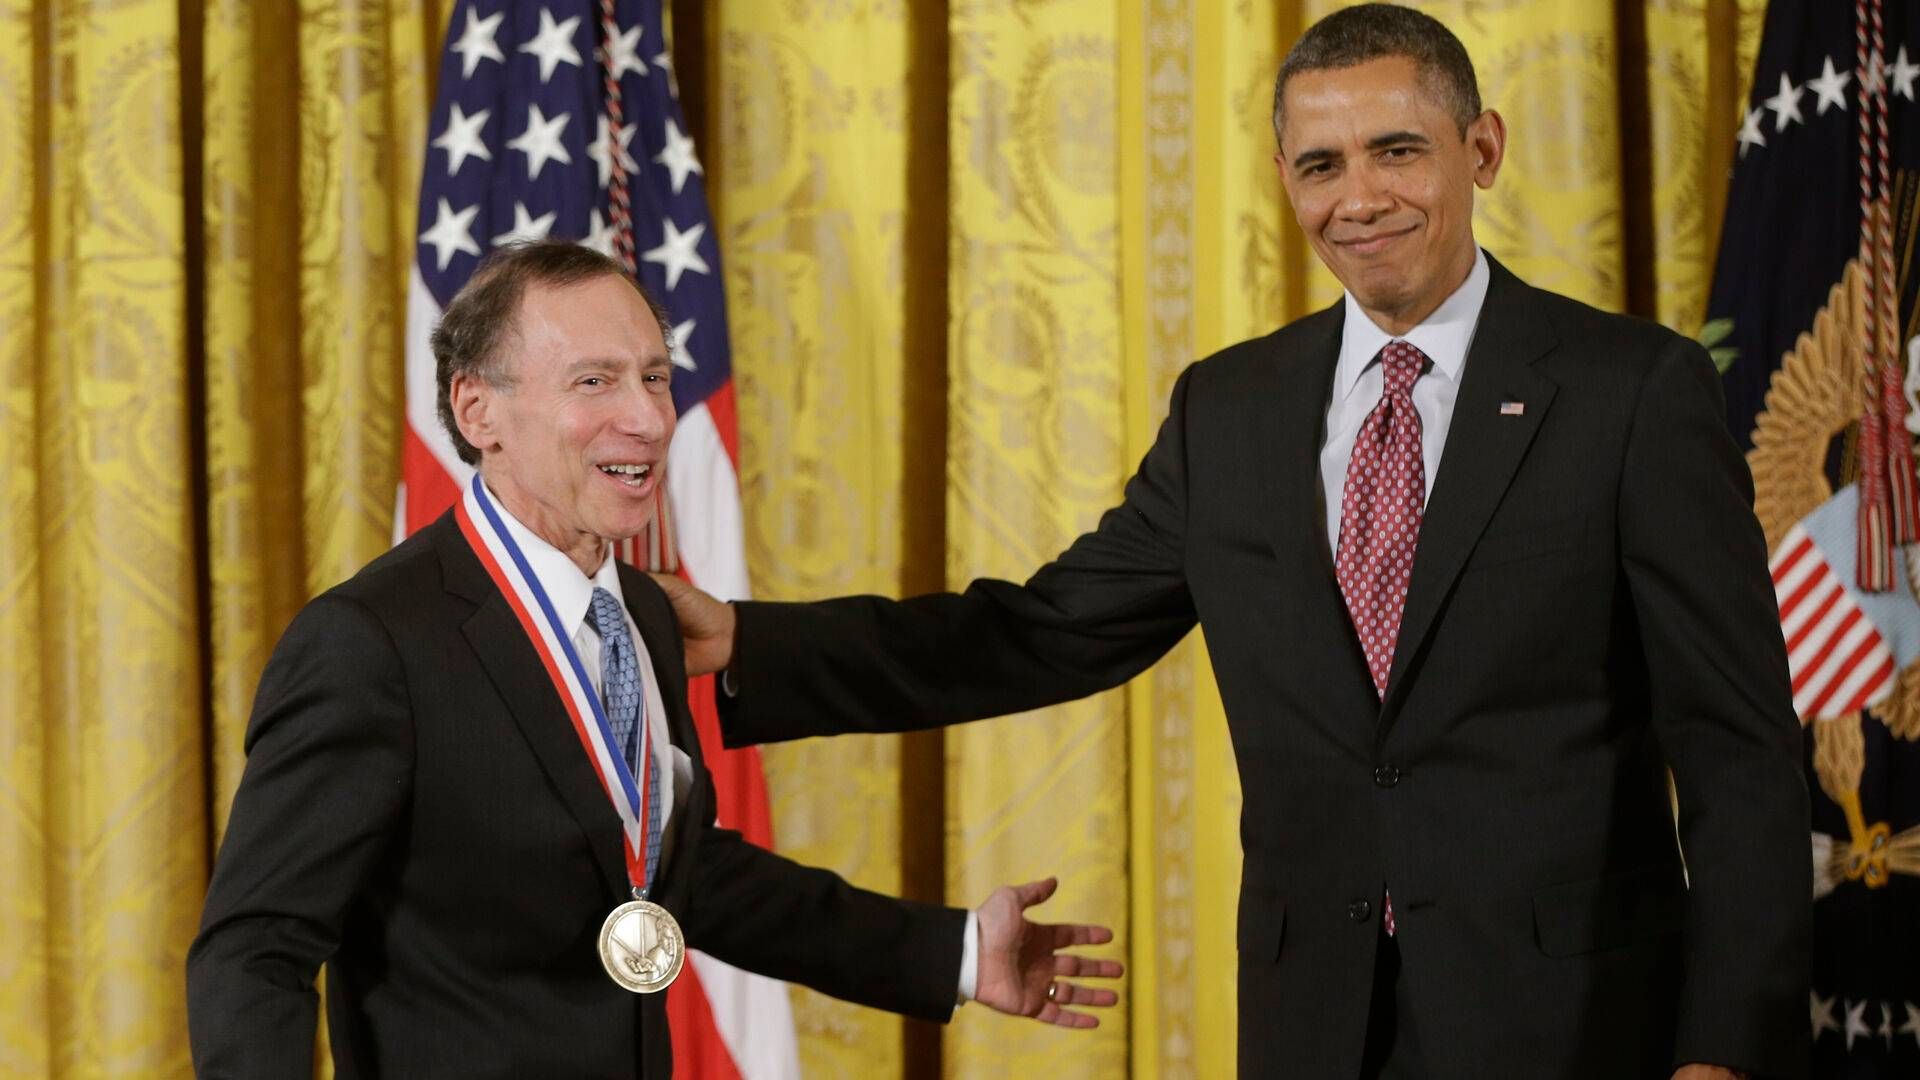 Robert Langer har i sin karriere modtaget adskillige hæderspriser. Her ses han i 2013, hvor USAs daværende præsident, Barack Obama, overrakte 'National Medal of Technology and Innovation'. | Foto: Charles Dharapak/AP/Ritzau Scanpix